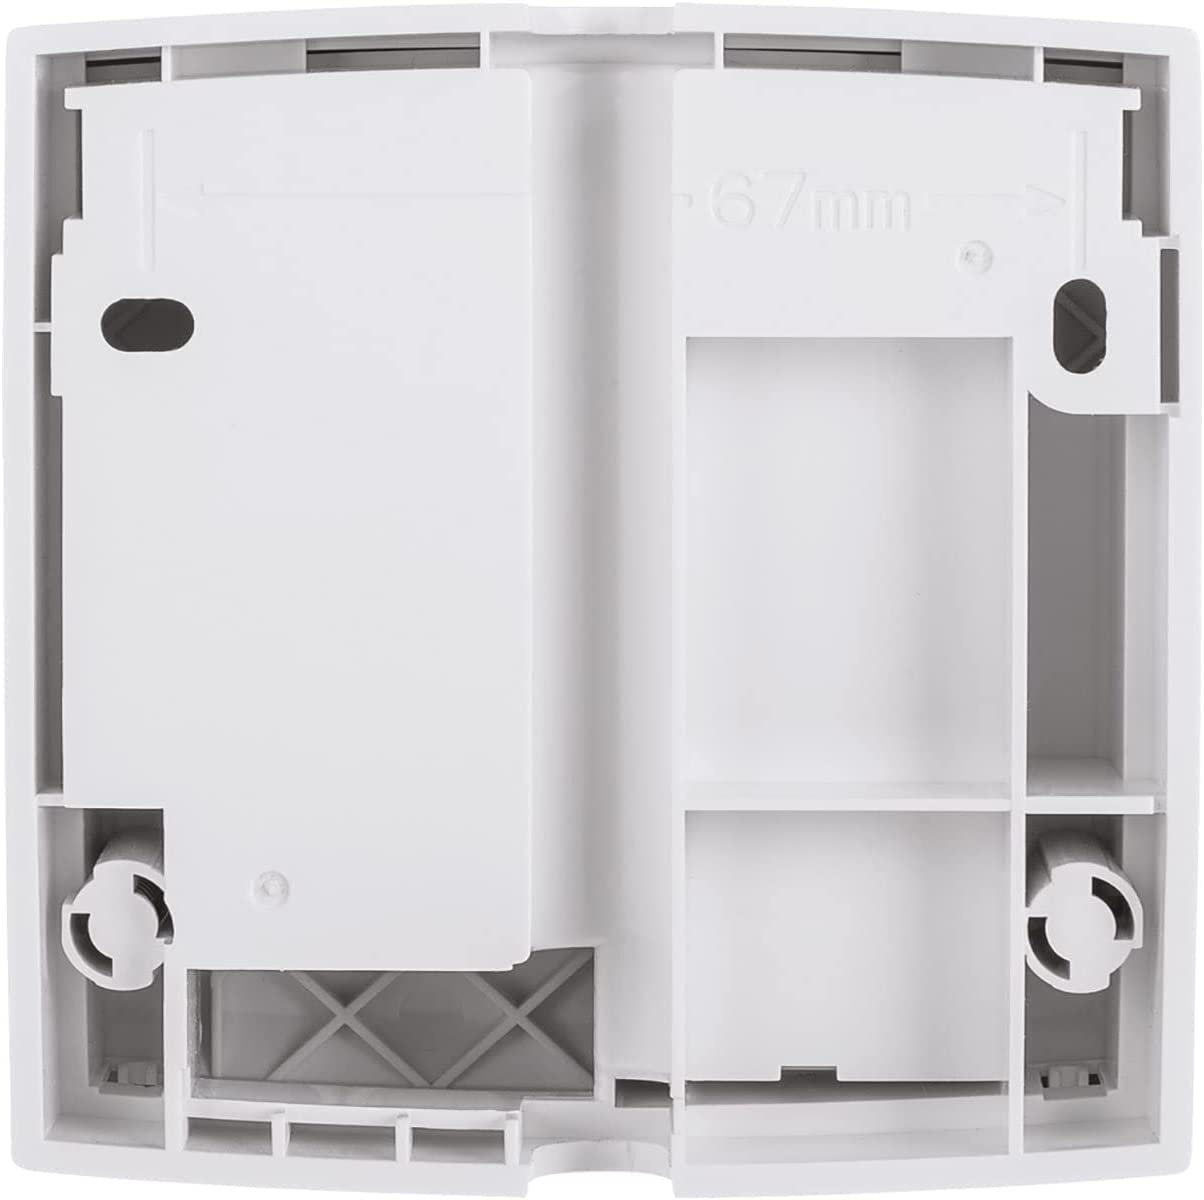 Homematic IP Smart Home Garagentortaster, smarte Garagentorsteuerung zum Nachrüsten, 150586A0